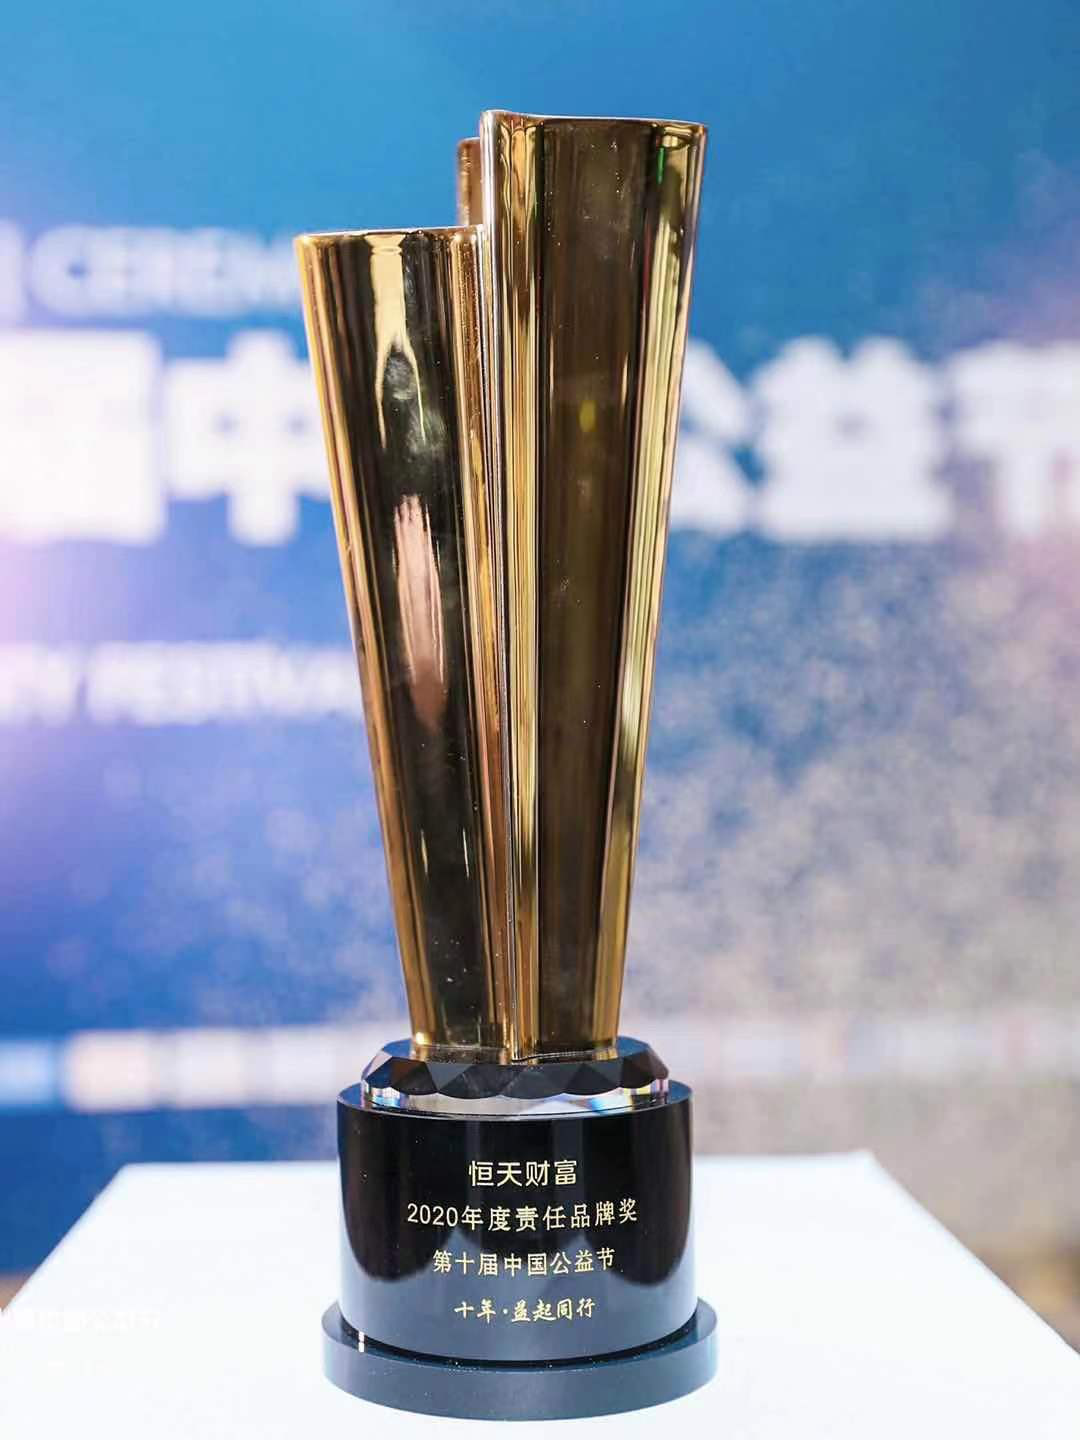 恒天财富荣获第十届中国公益节“2020年度责任品牌奖”